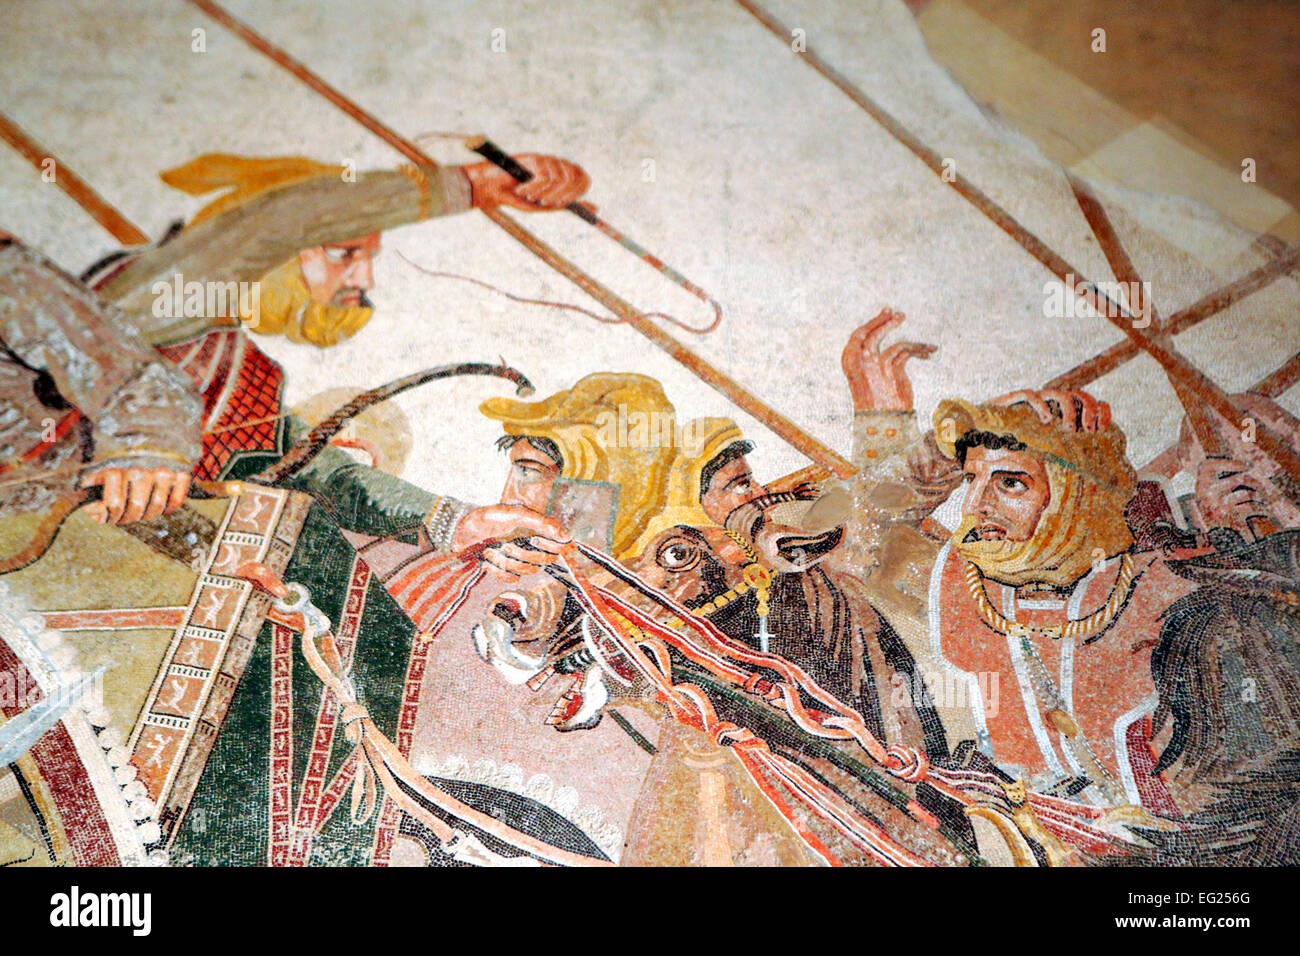 Kampf zwischen Alexander und Darius aus Pompeji (120 v. Chr.), Mosaik, Archäologisches Nationalmuseum Neapel, Kampanien, Italien Stockfoto